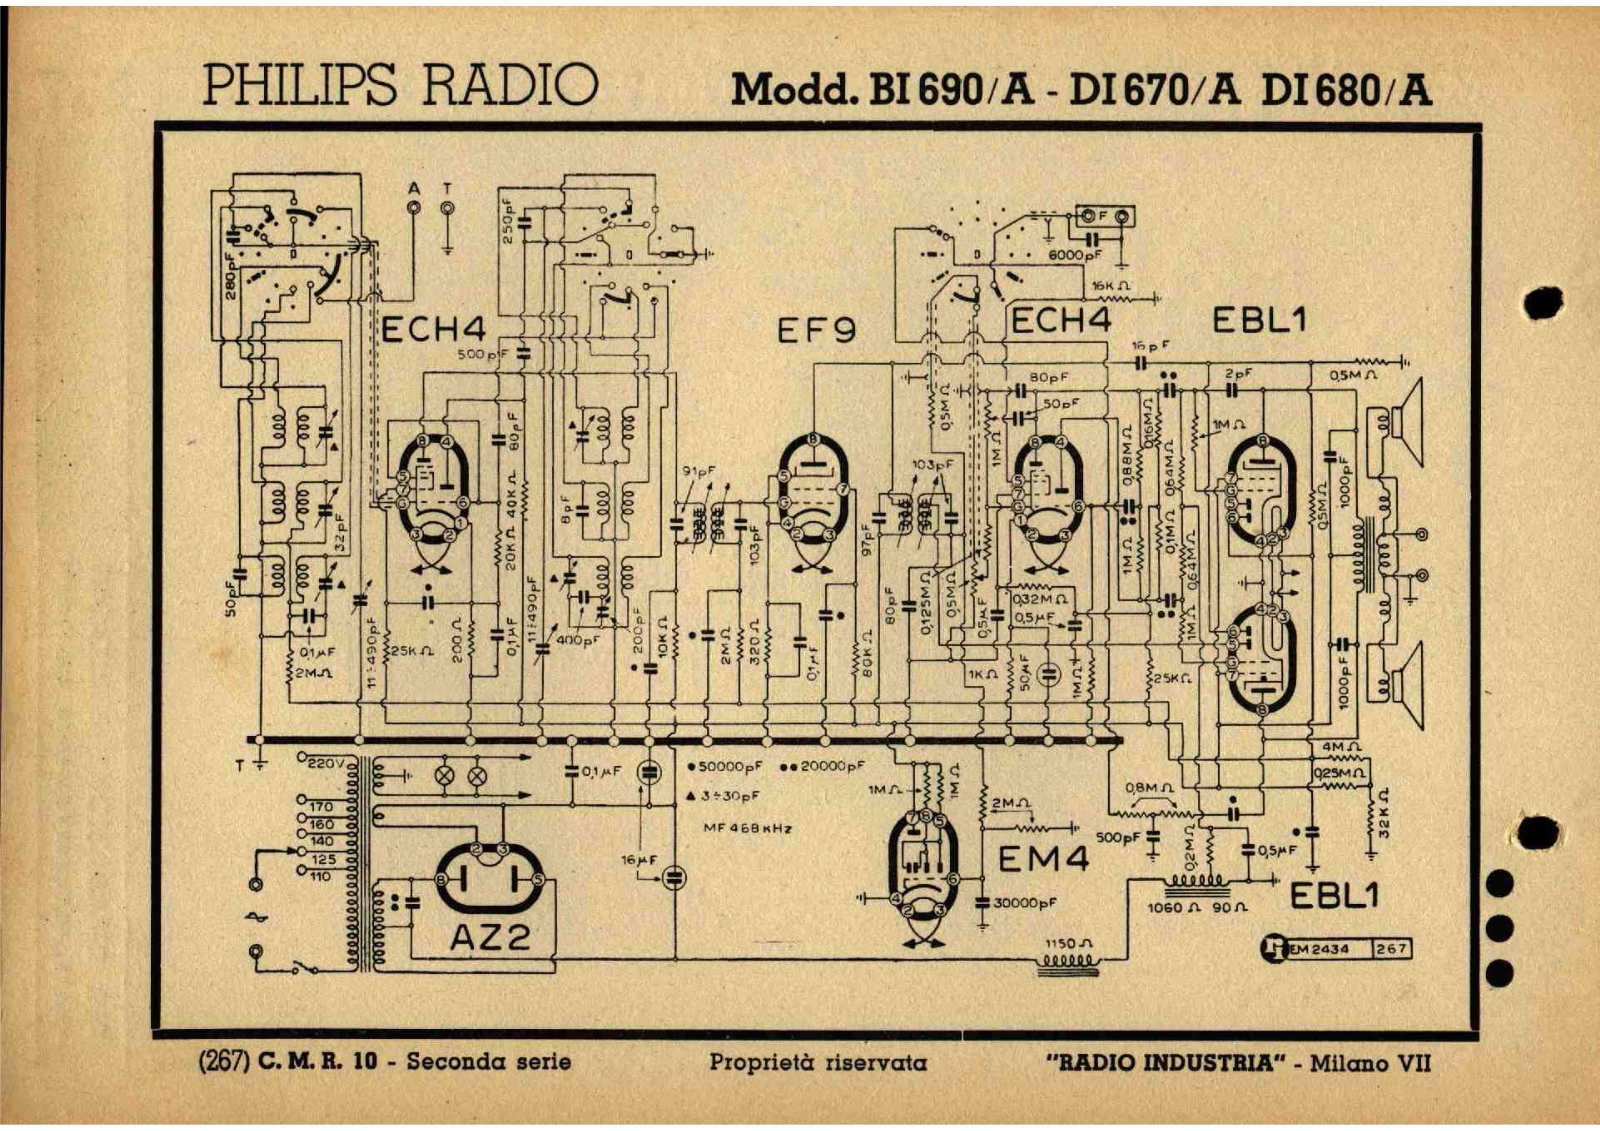 Philips bi690 a, di670 a, di680 a schematic